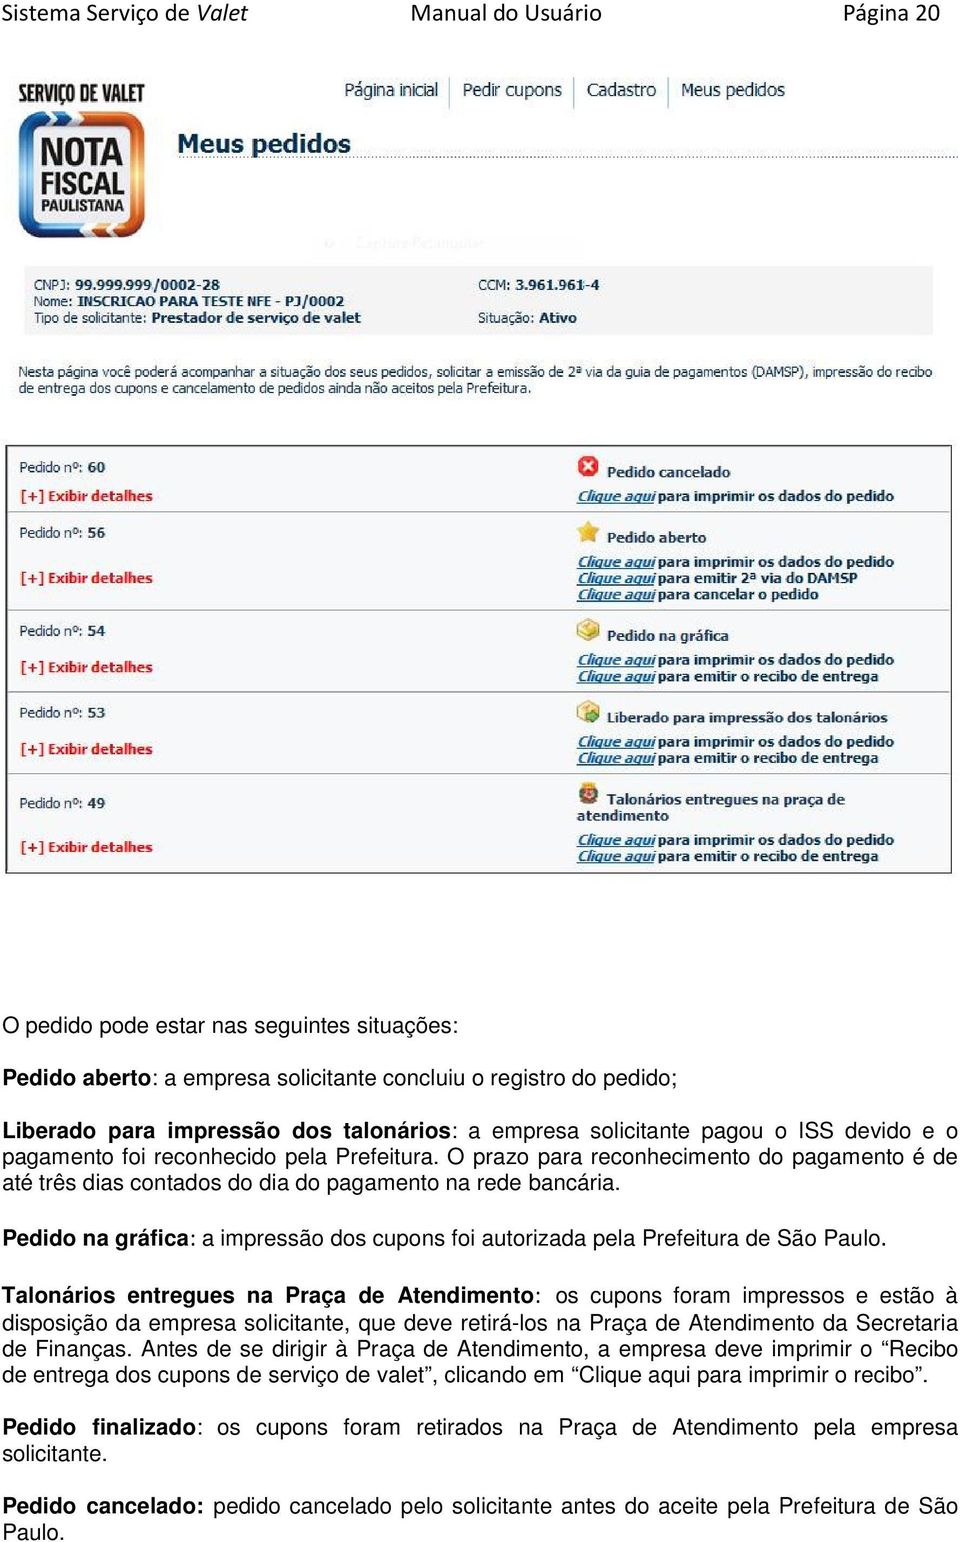 O prazo para reconhecimento do pagamento é de até três dias contados do dia do pagamento na rede bancária. Pedido na gráfica: a impressão dos cupons foi autorizada pela Prefeitura de São Paulo.